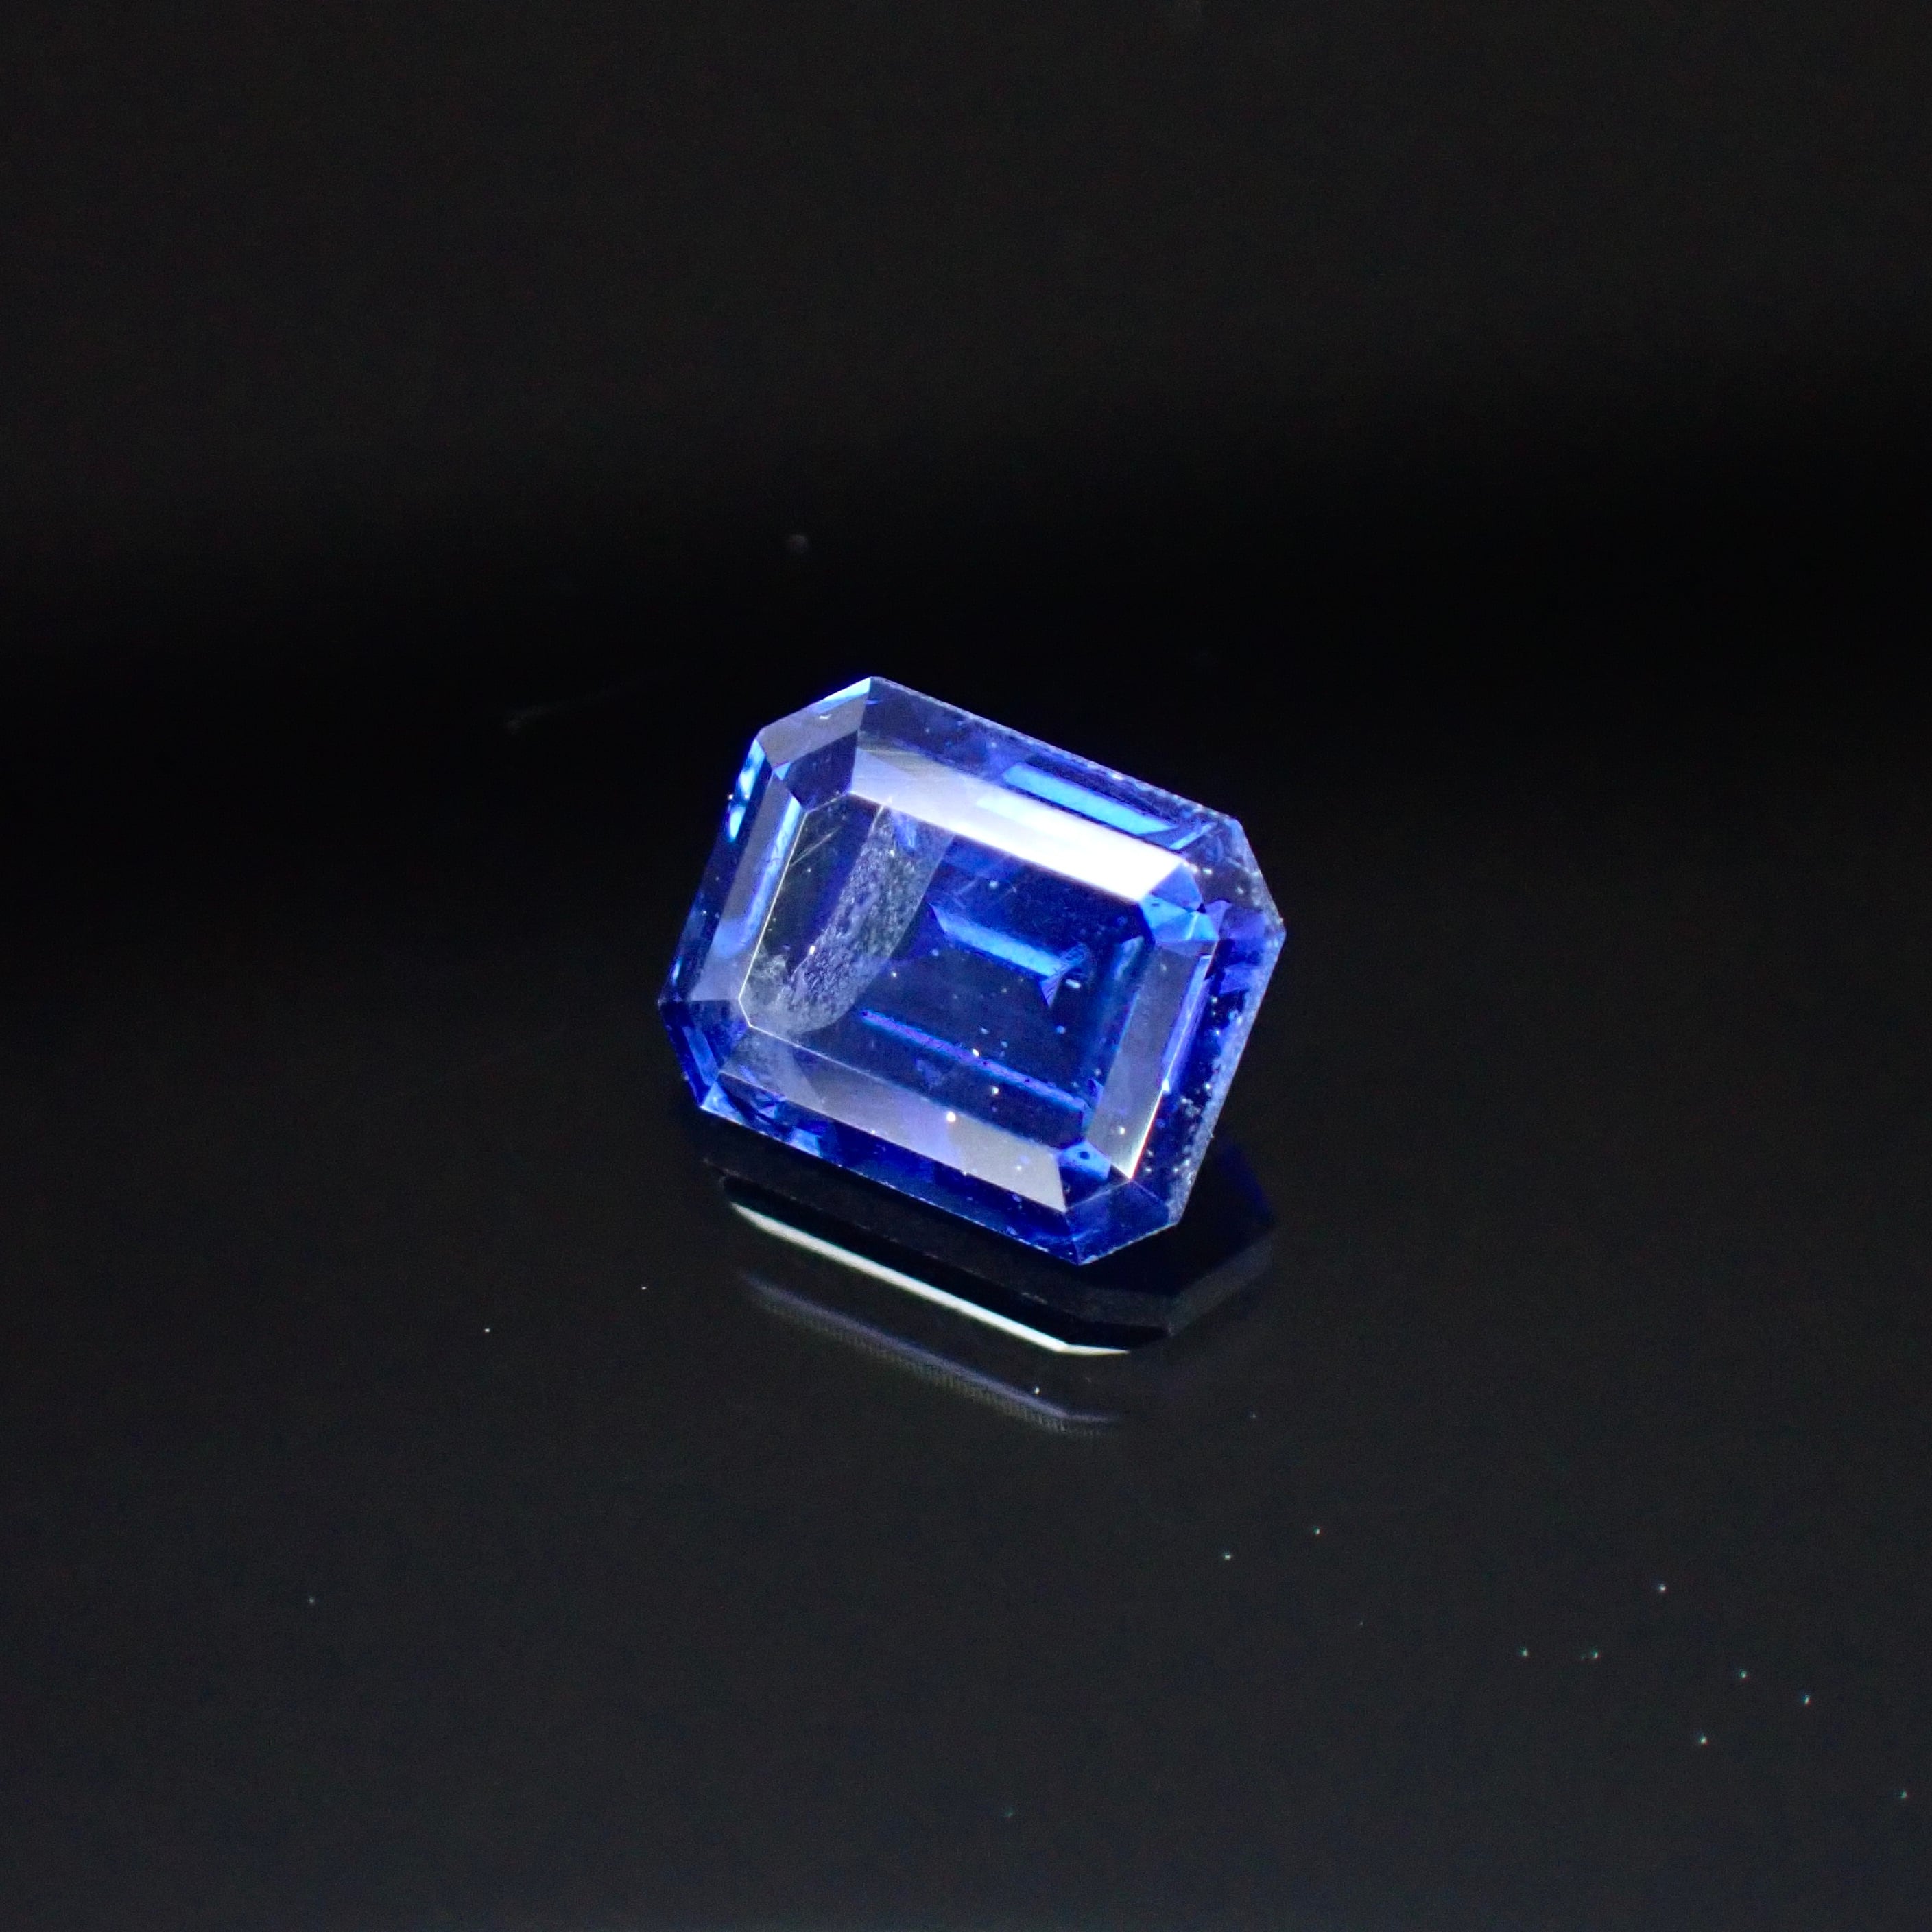 上品に輝く青い結晶 0.57ct 天然ブルーサファイア | Frederick’s Gems&Jewelry powered by BASE